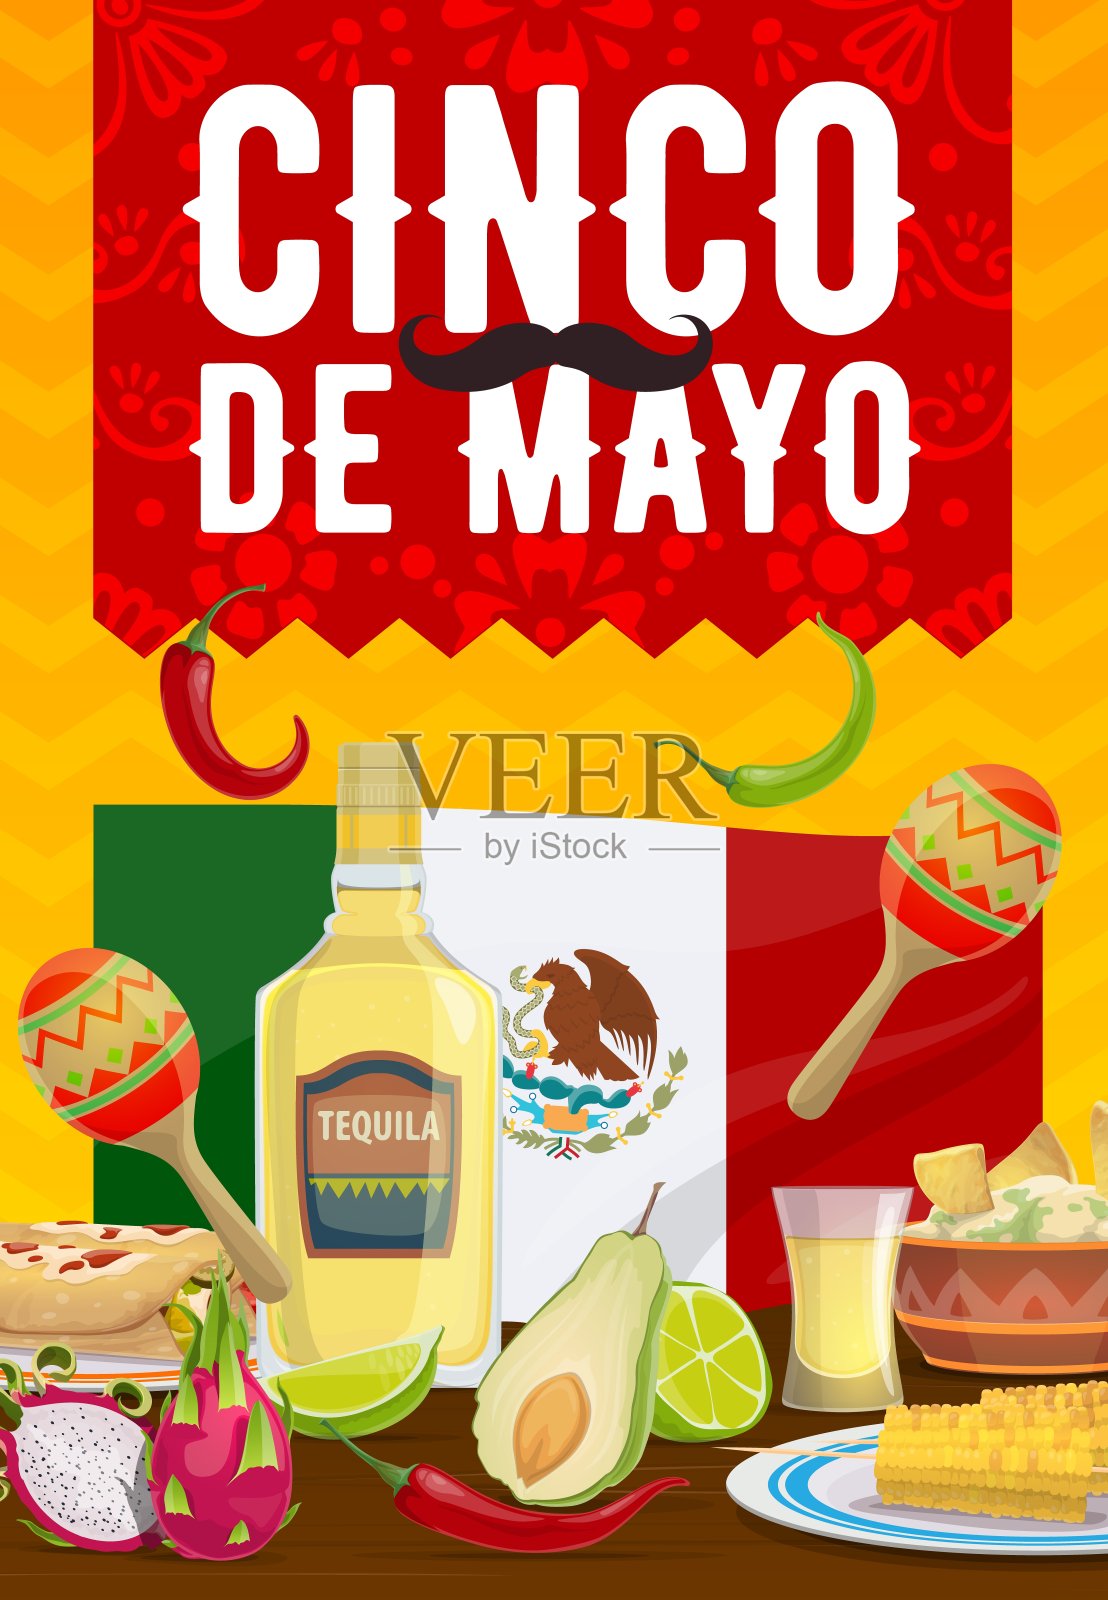 万岁墨西哥向量海报与墨西哥食物餐点设计模板素材